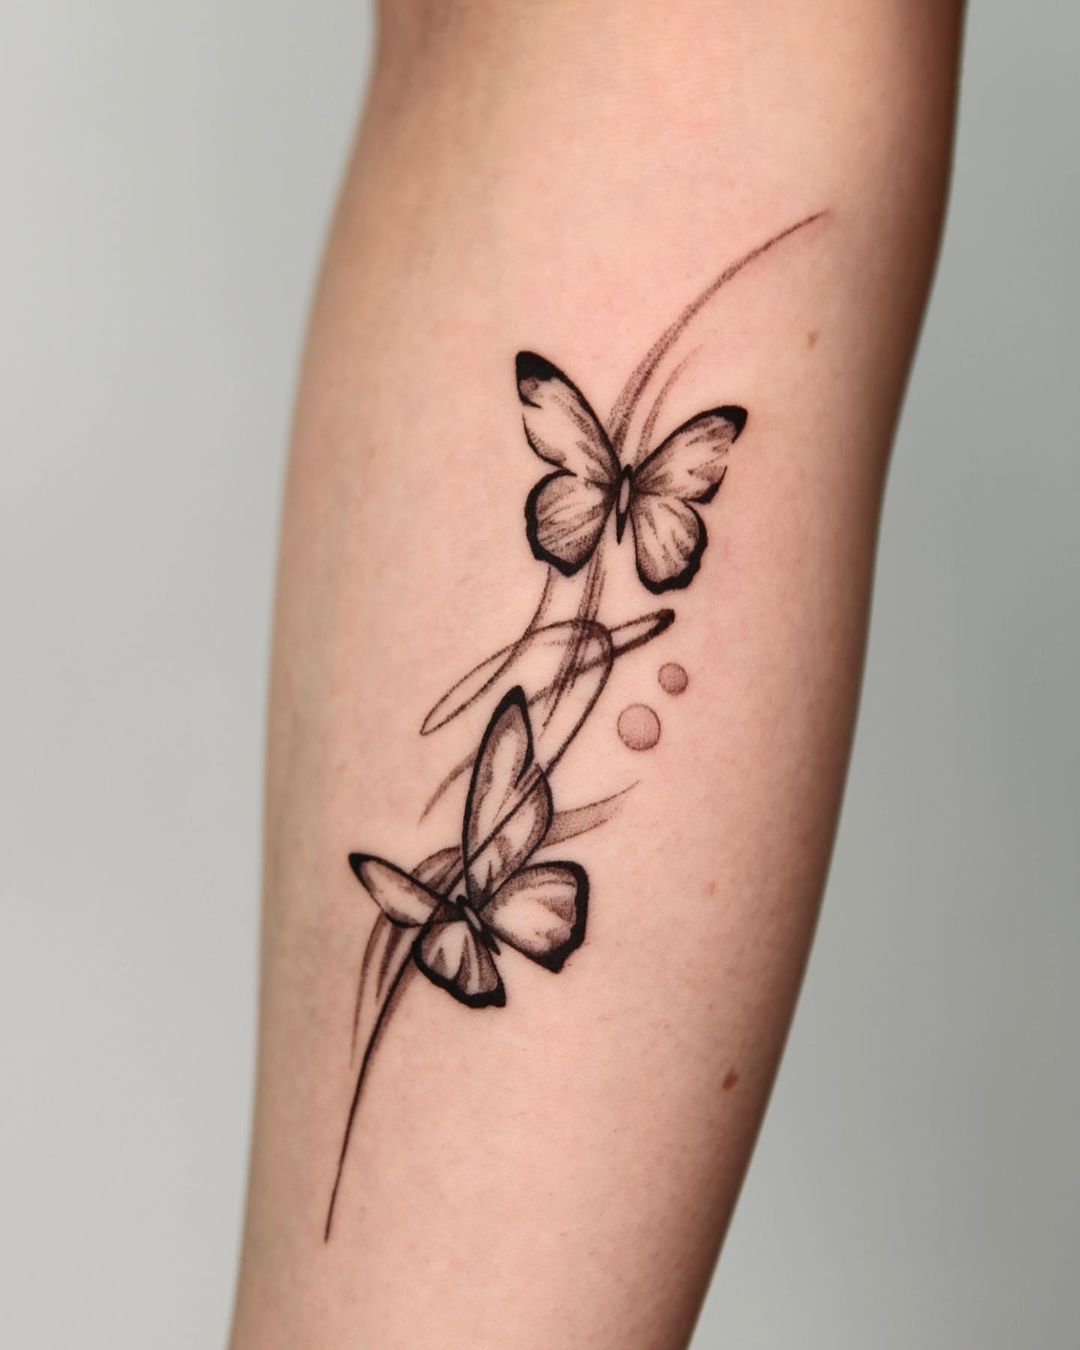 Blackwork tattoo ideas for women by moku ttt